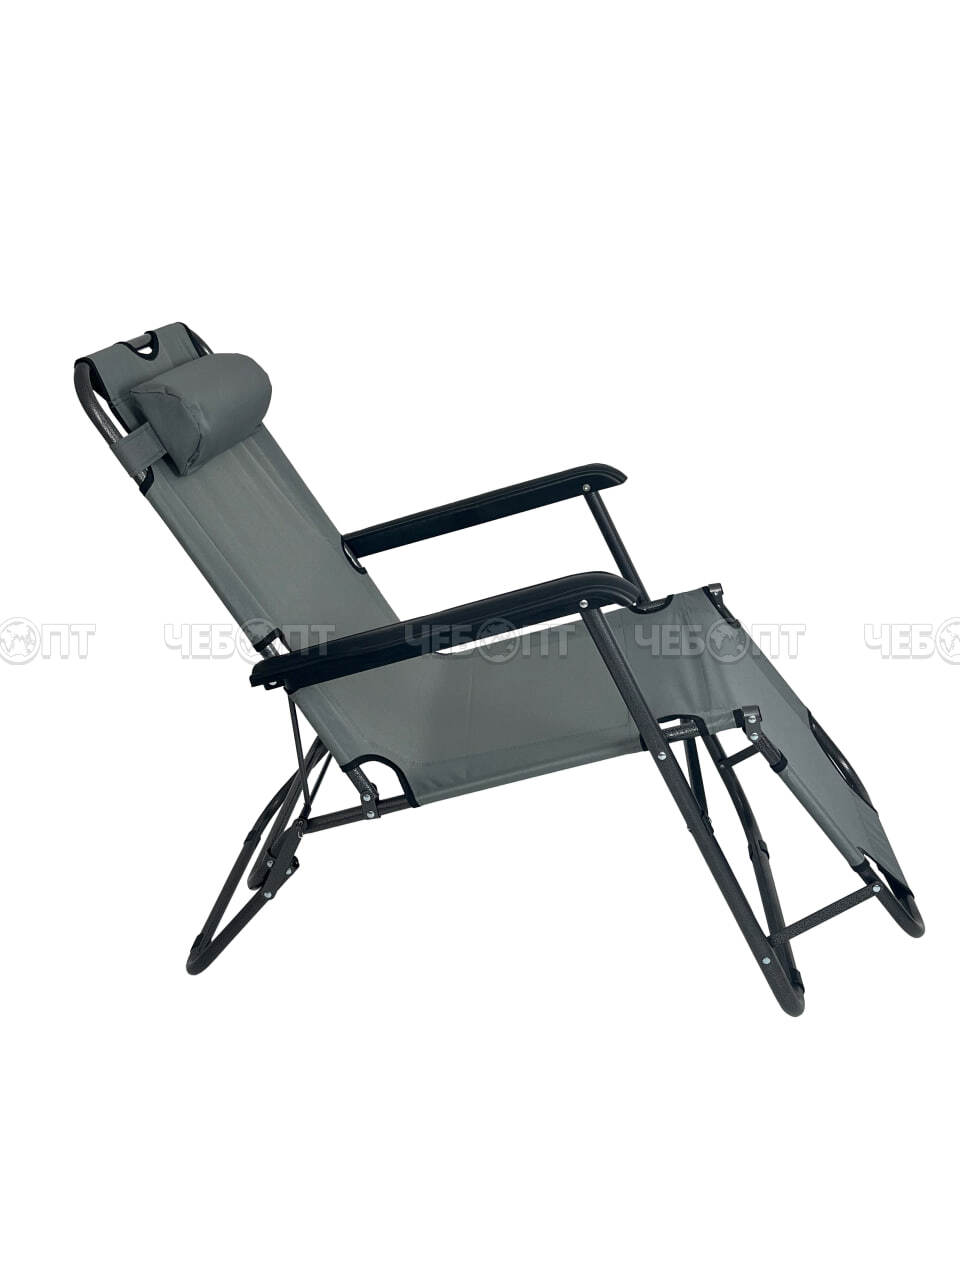 Кресло - шезлонг складное 1530*590 мм с подголовн., регулируемое, 8 полож. (до положения лёжа), макс. нагр. 100 кг арт. 290034 $ [4] GOODSEE. ЧЕБОПТ.